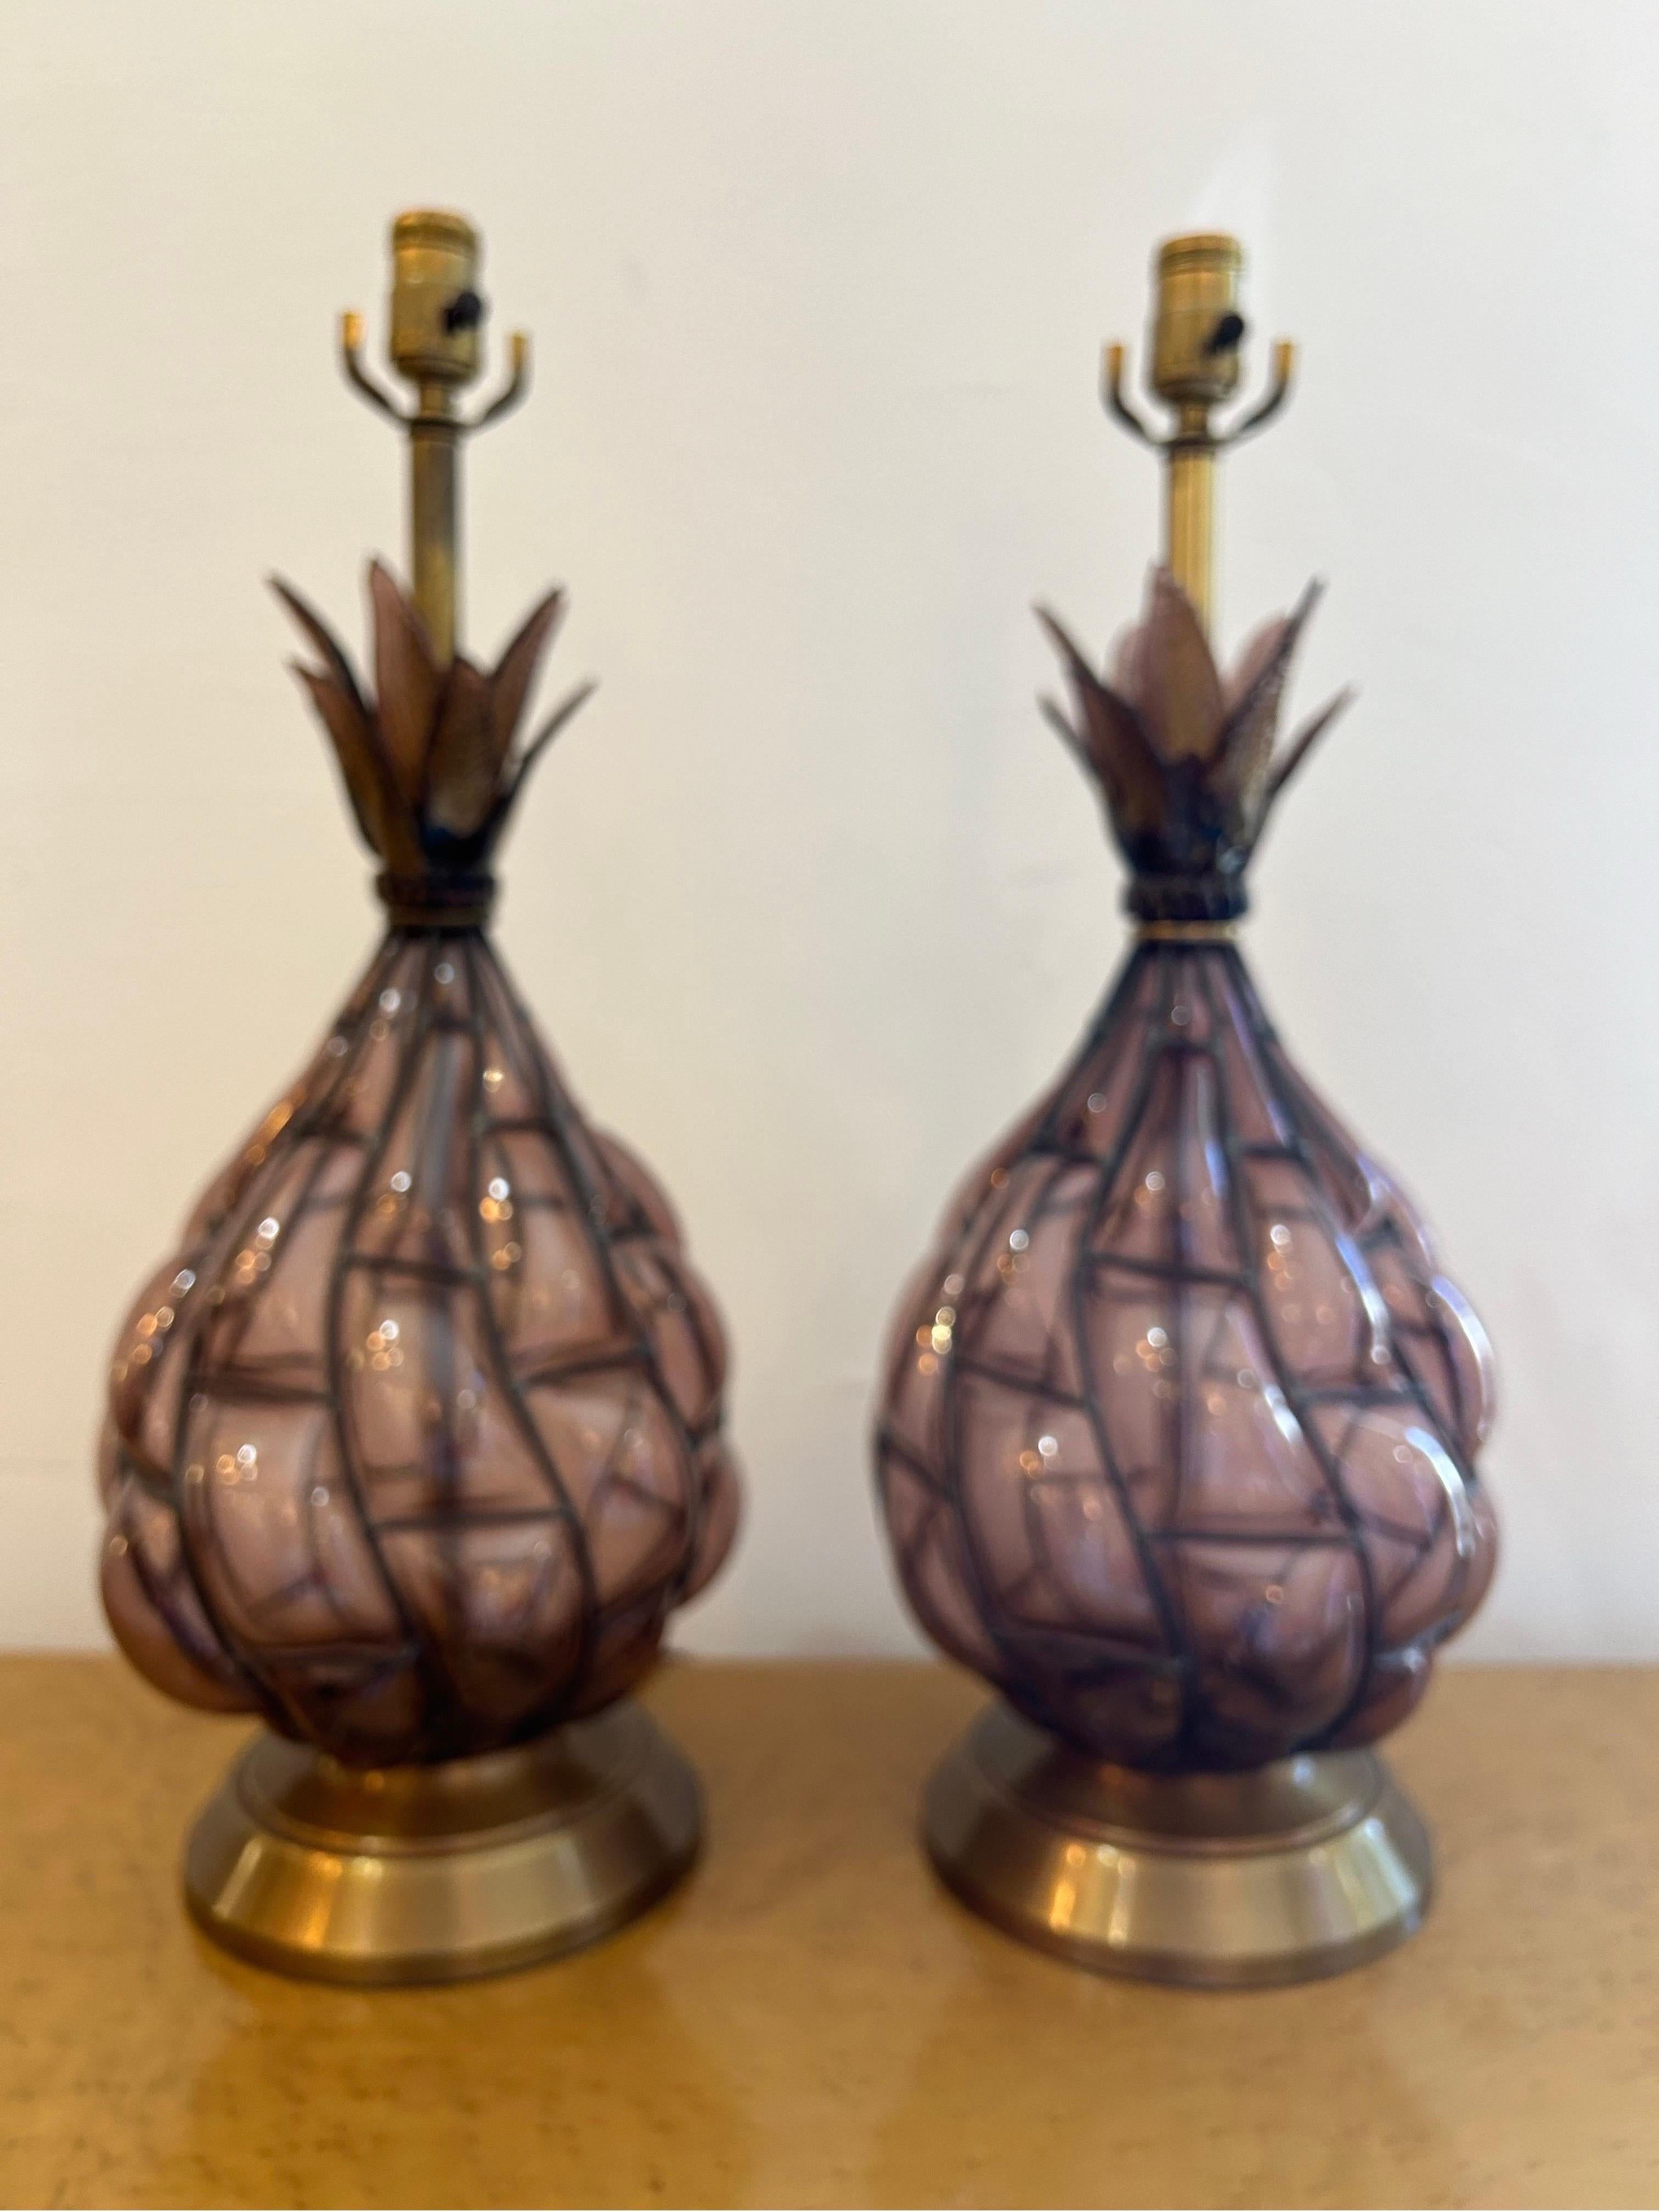 Paire de lampes en verre de Murano de couleur améthyste dans un cadre métallique, soufflées à la main à la perfection. Garni de feuilles d'ananas en verre qui scintillent...